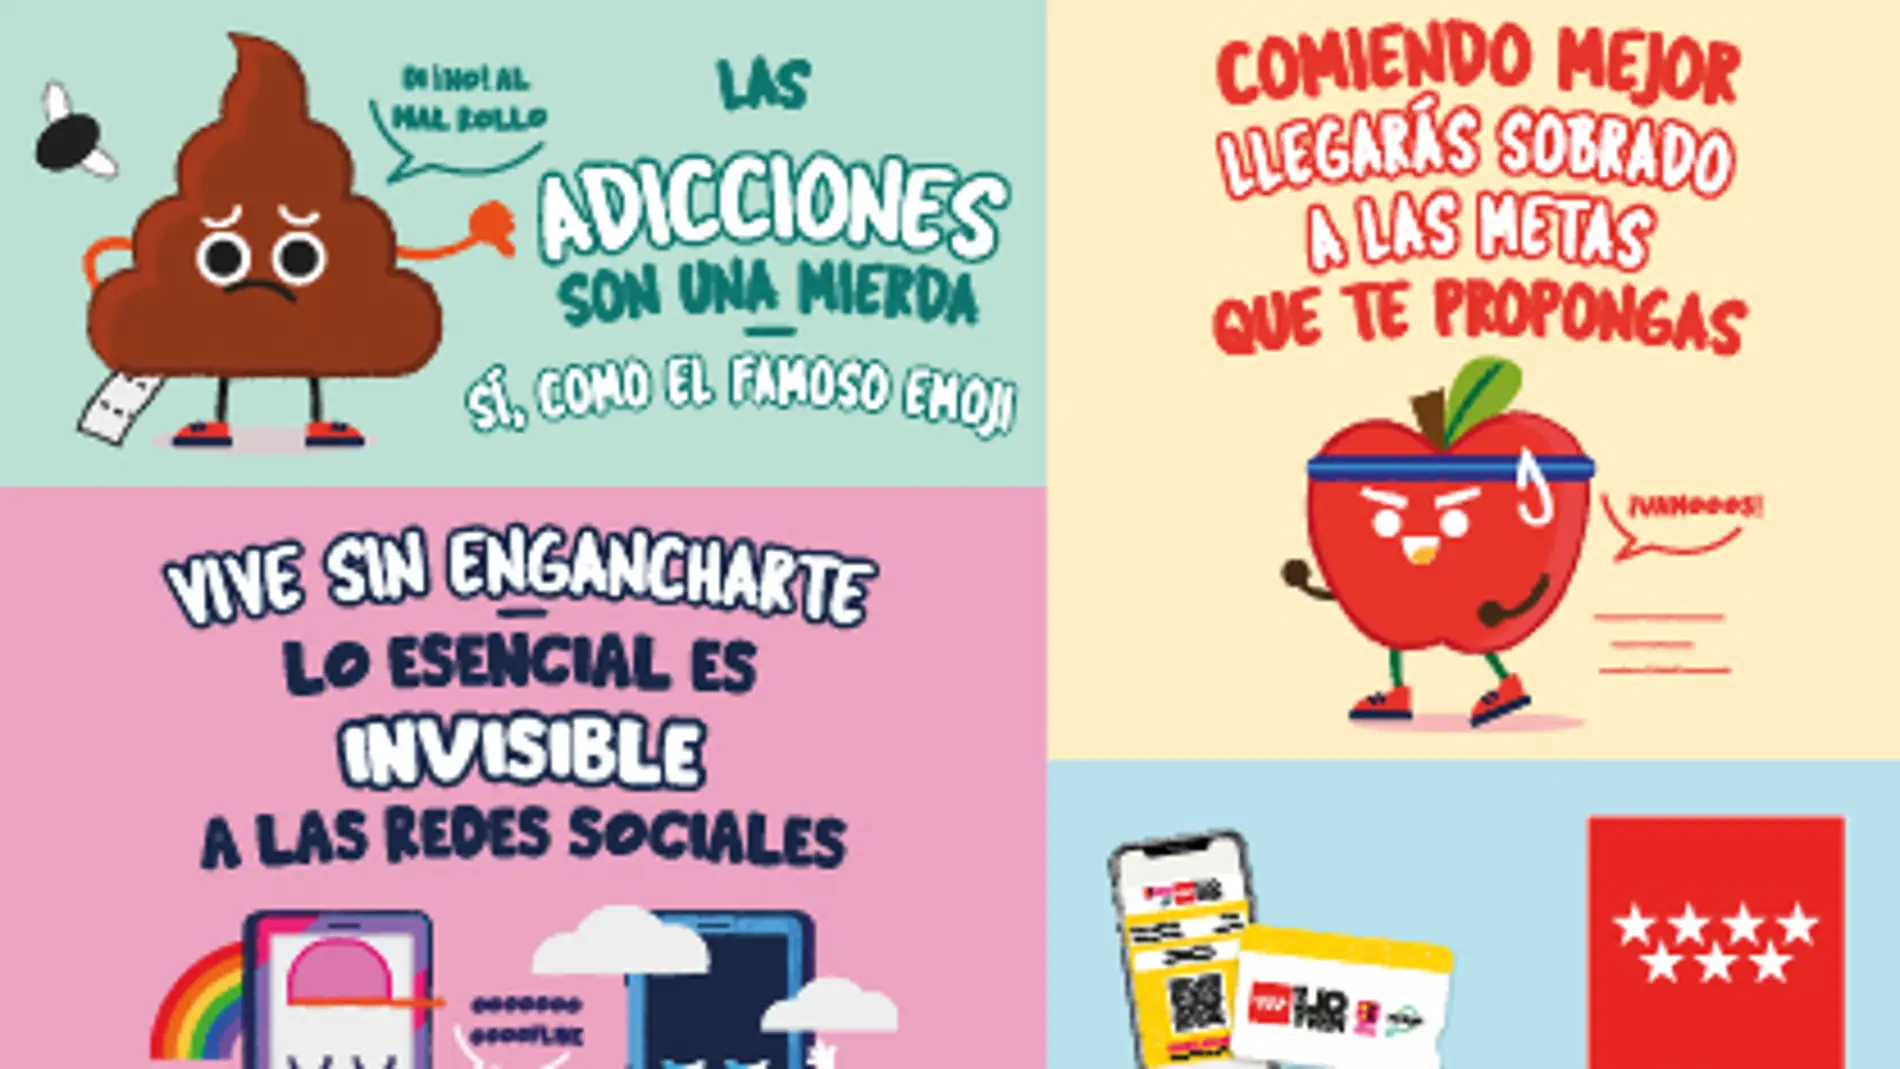 Madrid lanza la campaña ‘La salud con actitud’ para promover hábitos de vida saludable entre los jóvenes